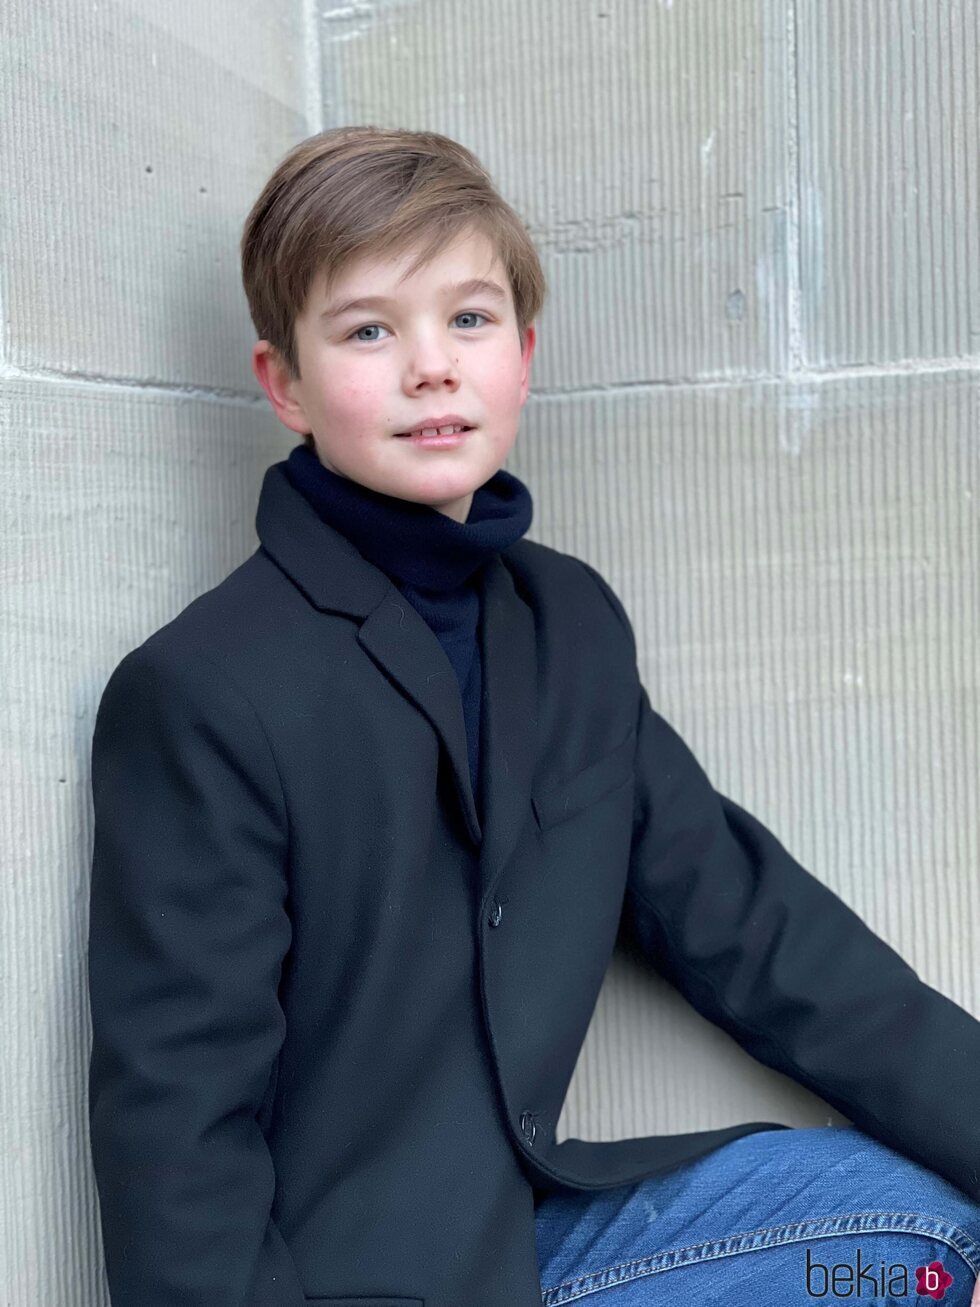 Vicente de Dinamarca en su 11 cumpleaños